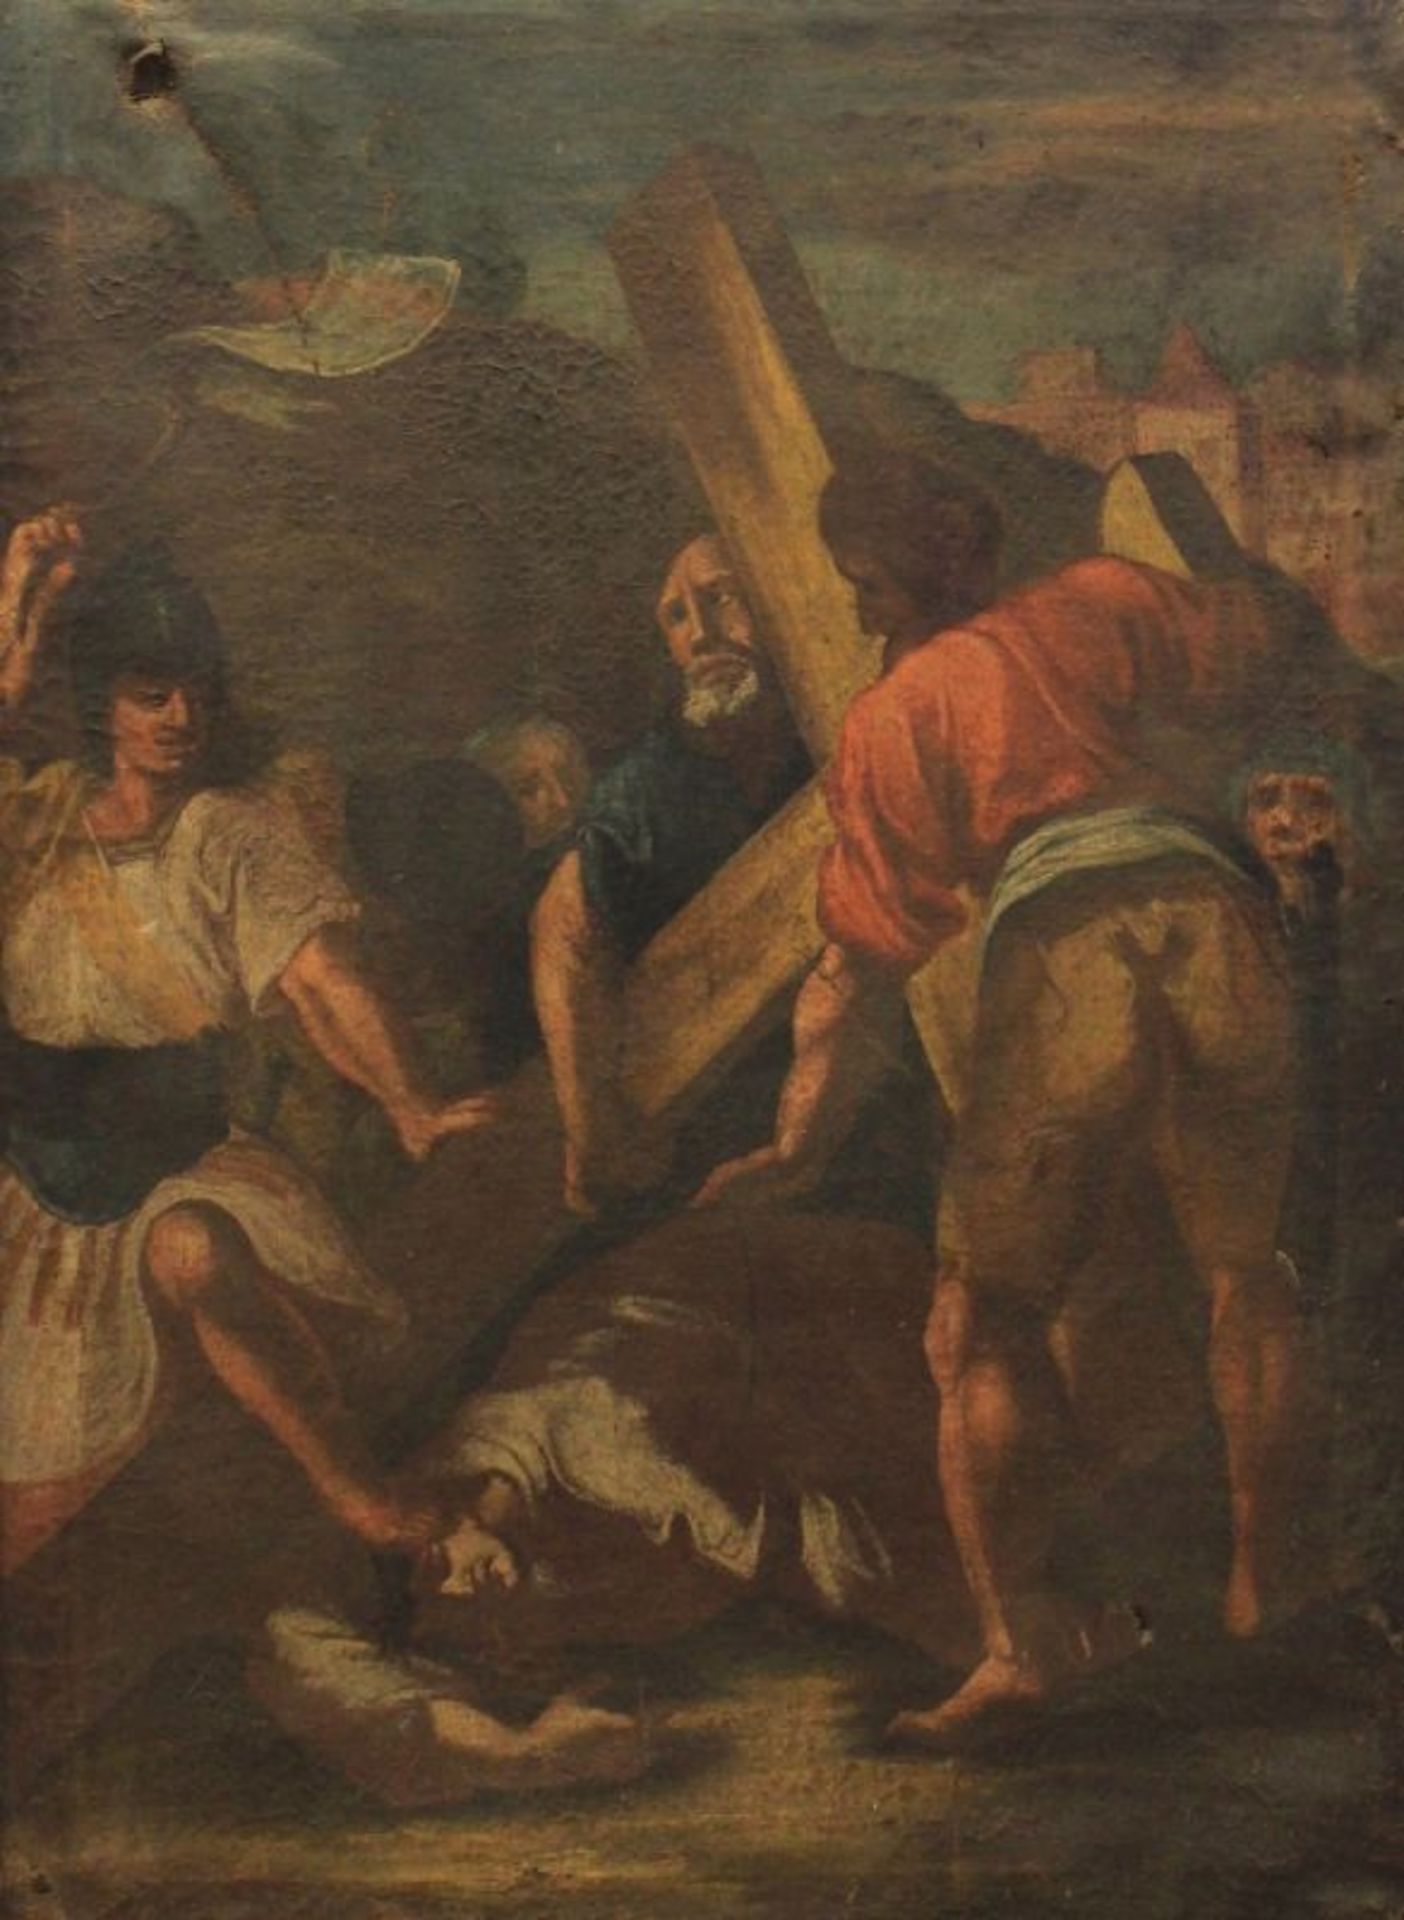 Gemälde - 18.Jahrhundert "Kreuzweg", unsigniert, Öl auf Leinwand, Maße ca. 94x67 cm, starke